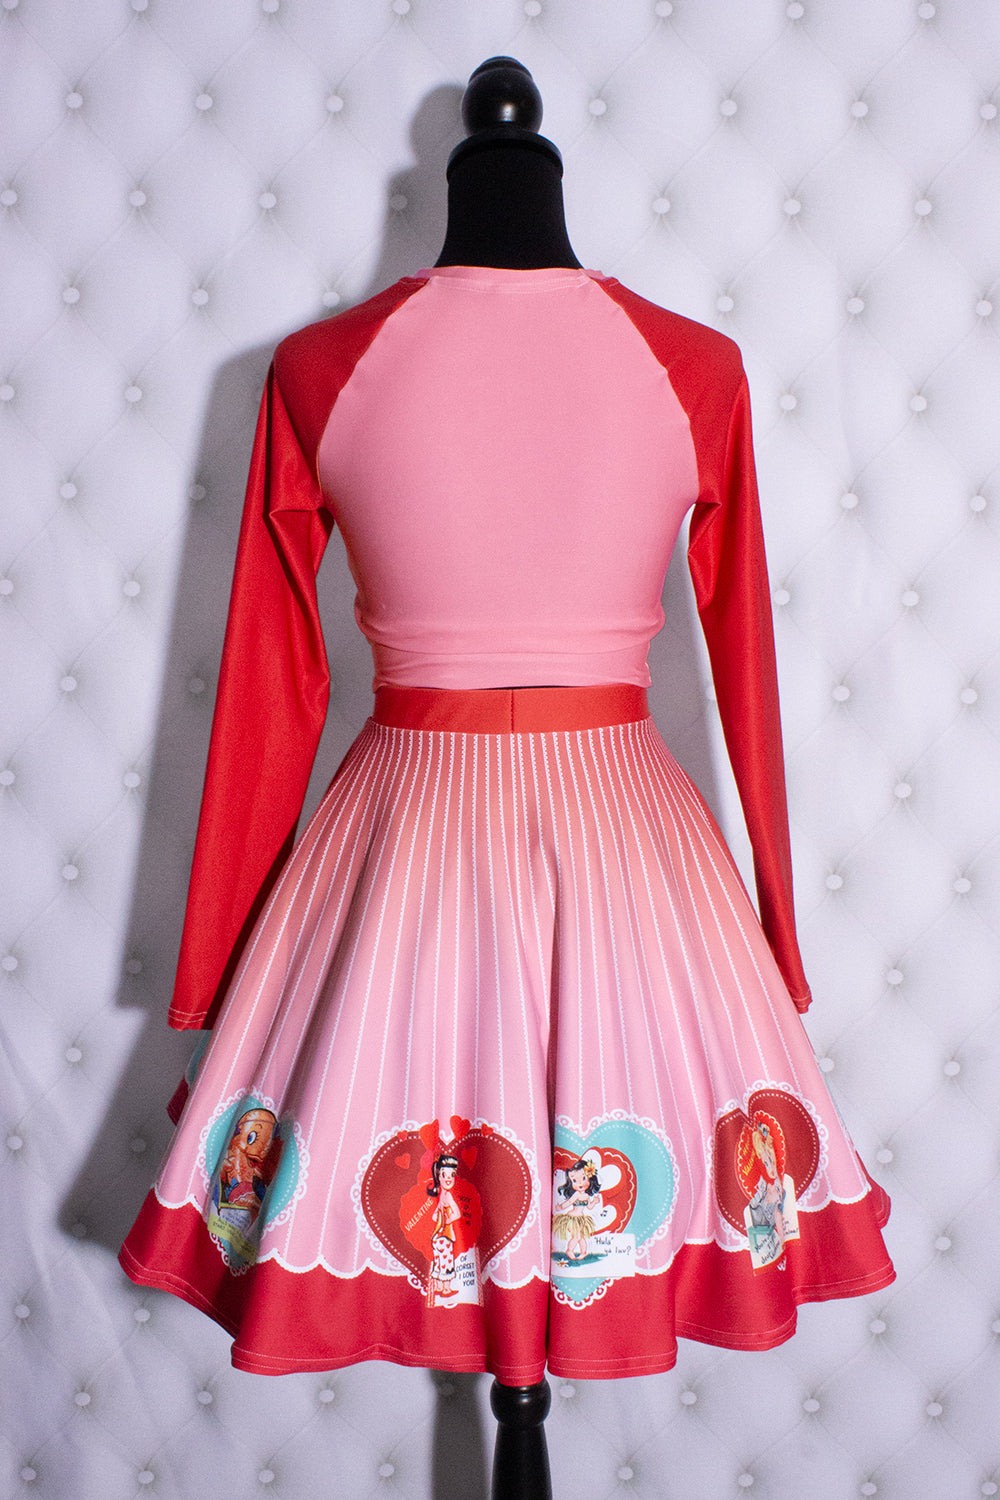 Vintage Valentine Skirt